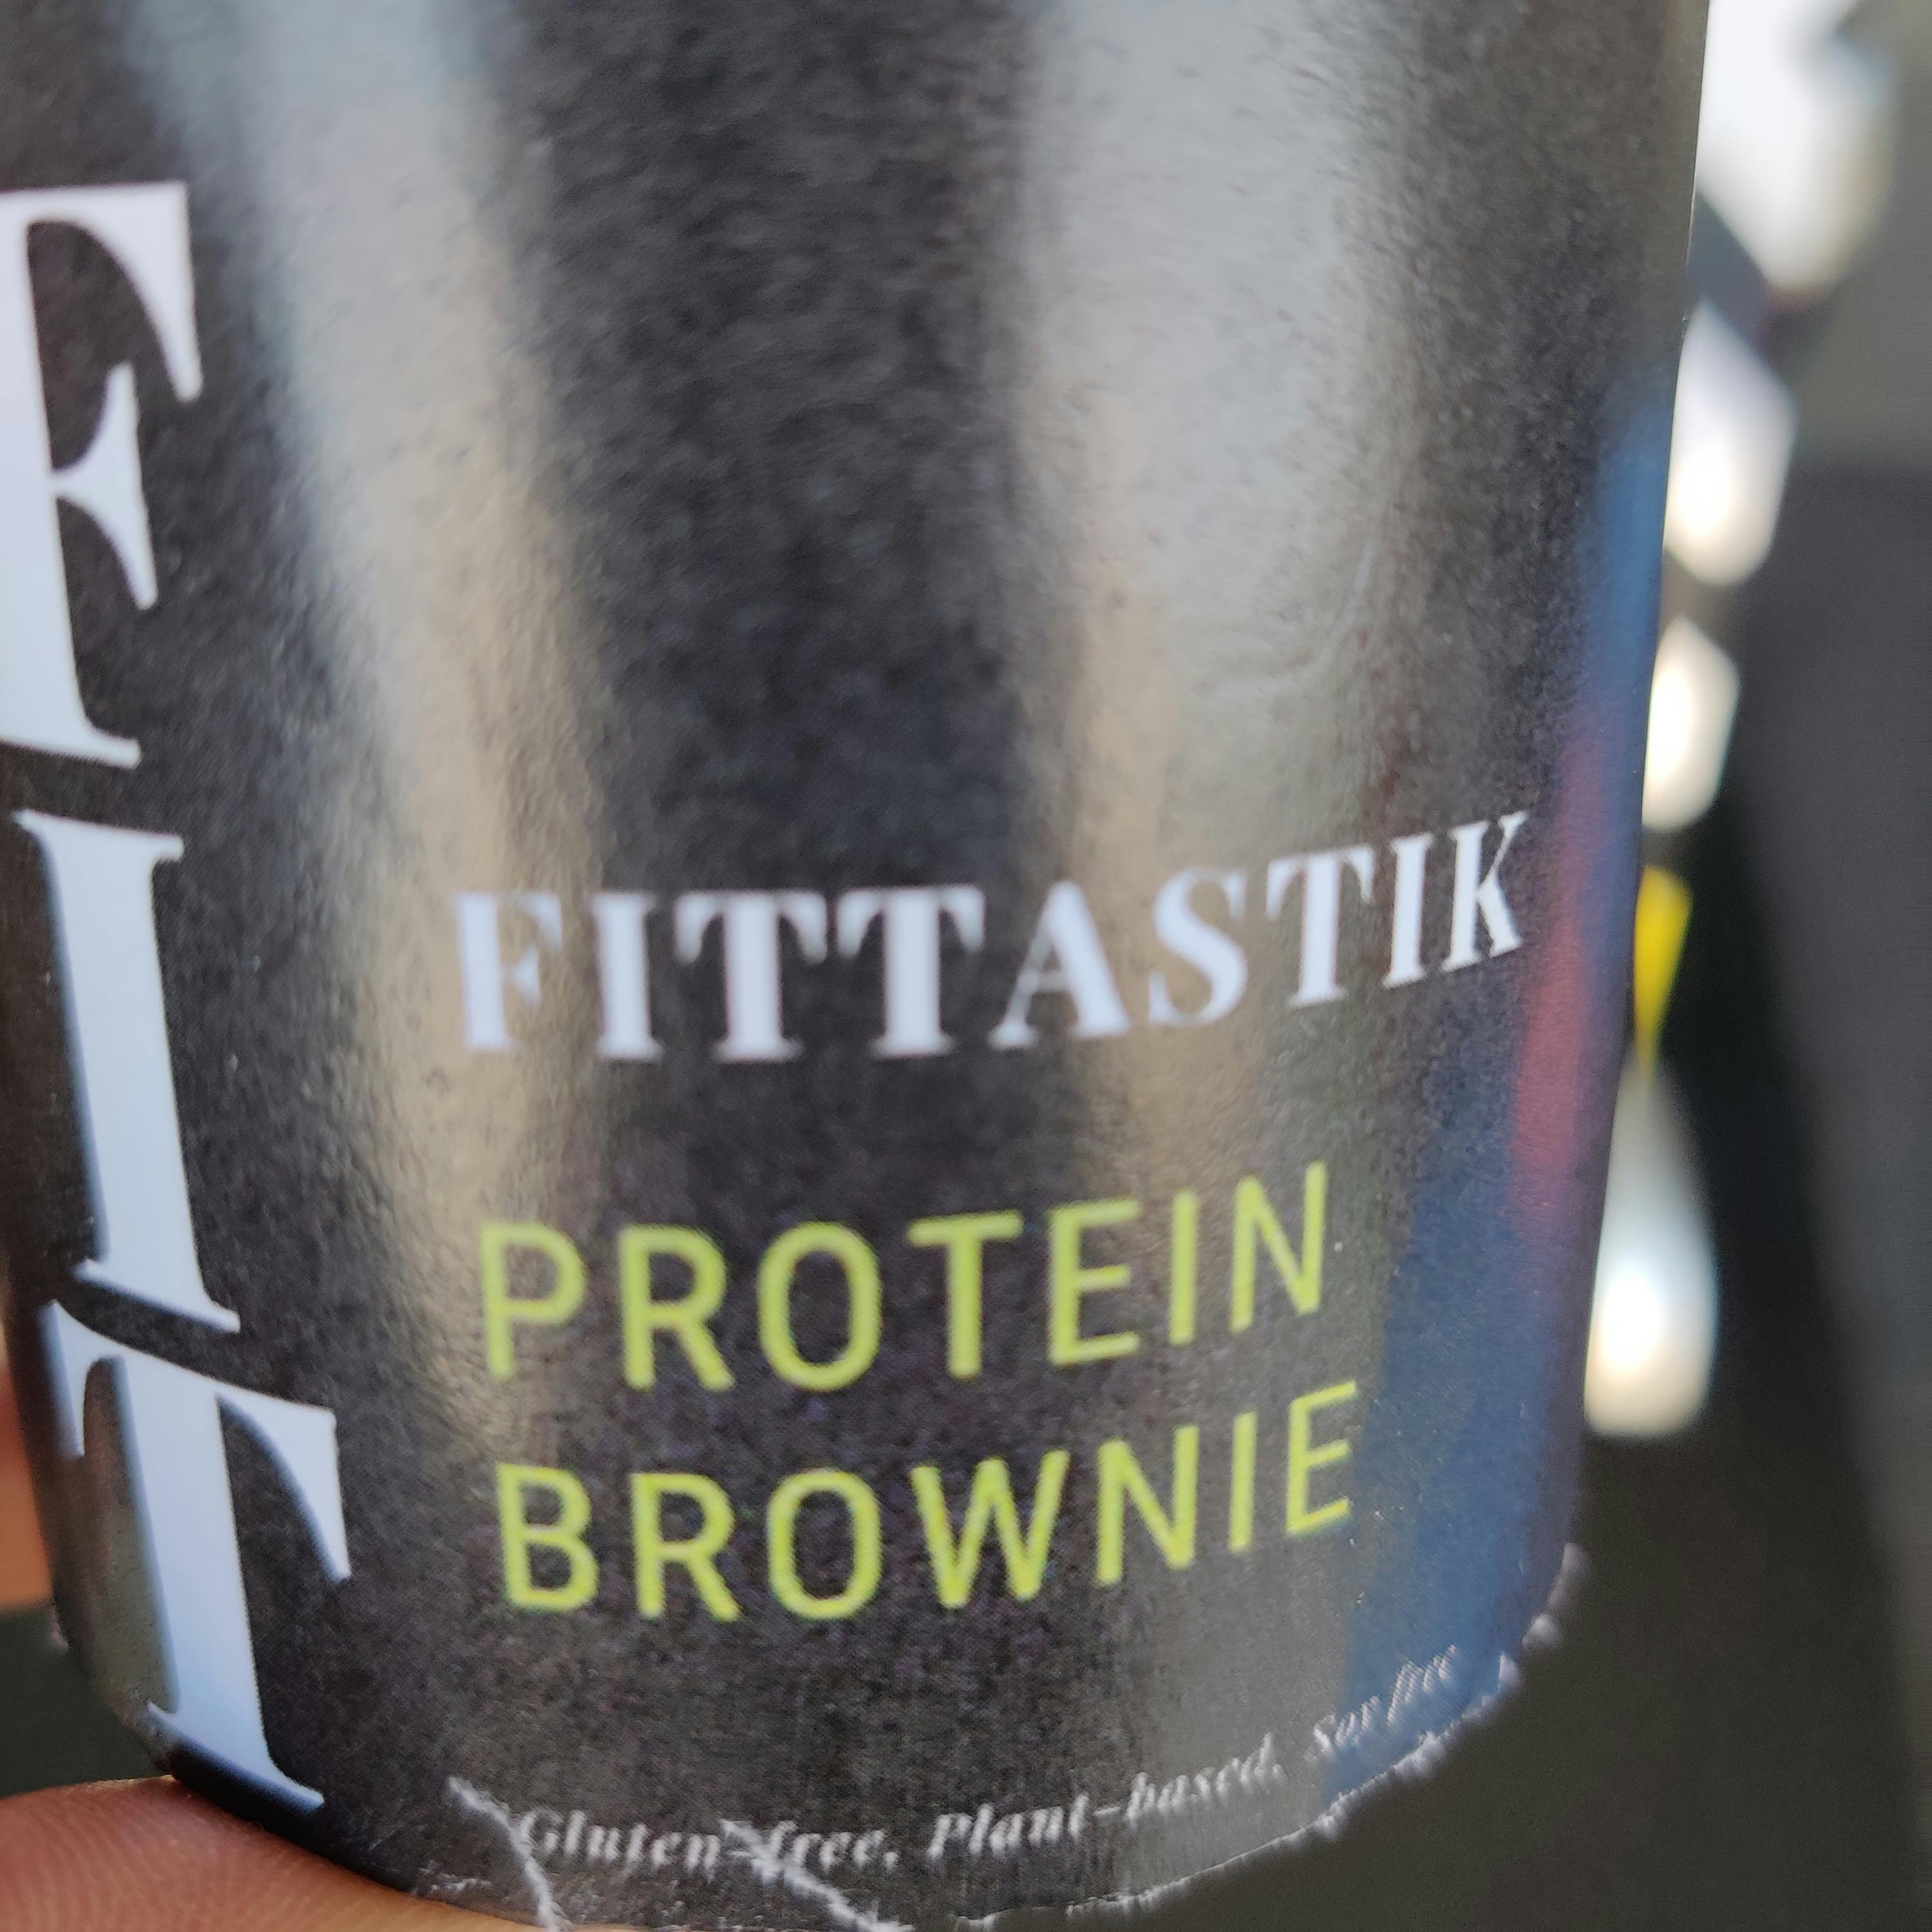 Fittastik Protein Brownie 